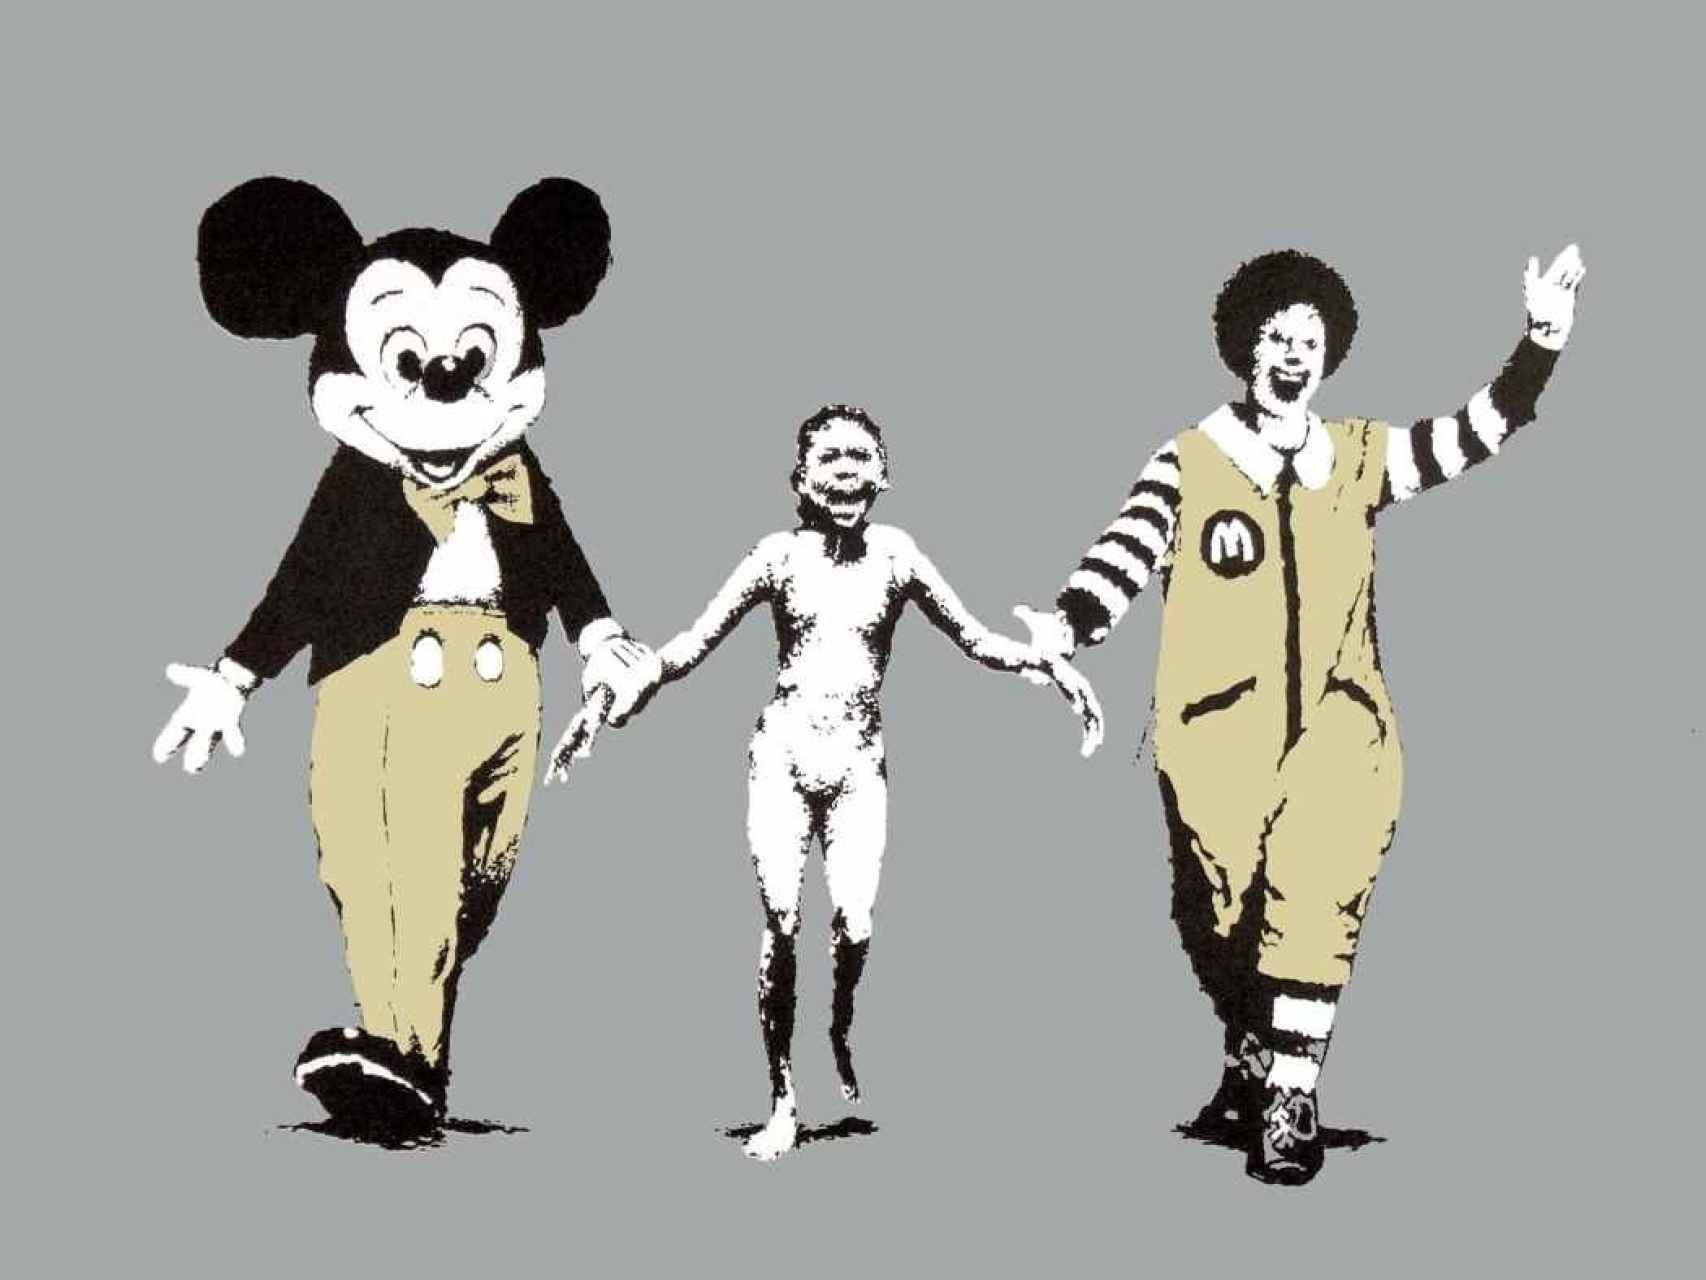 Una de las obras más conocidas de Banksy